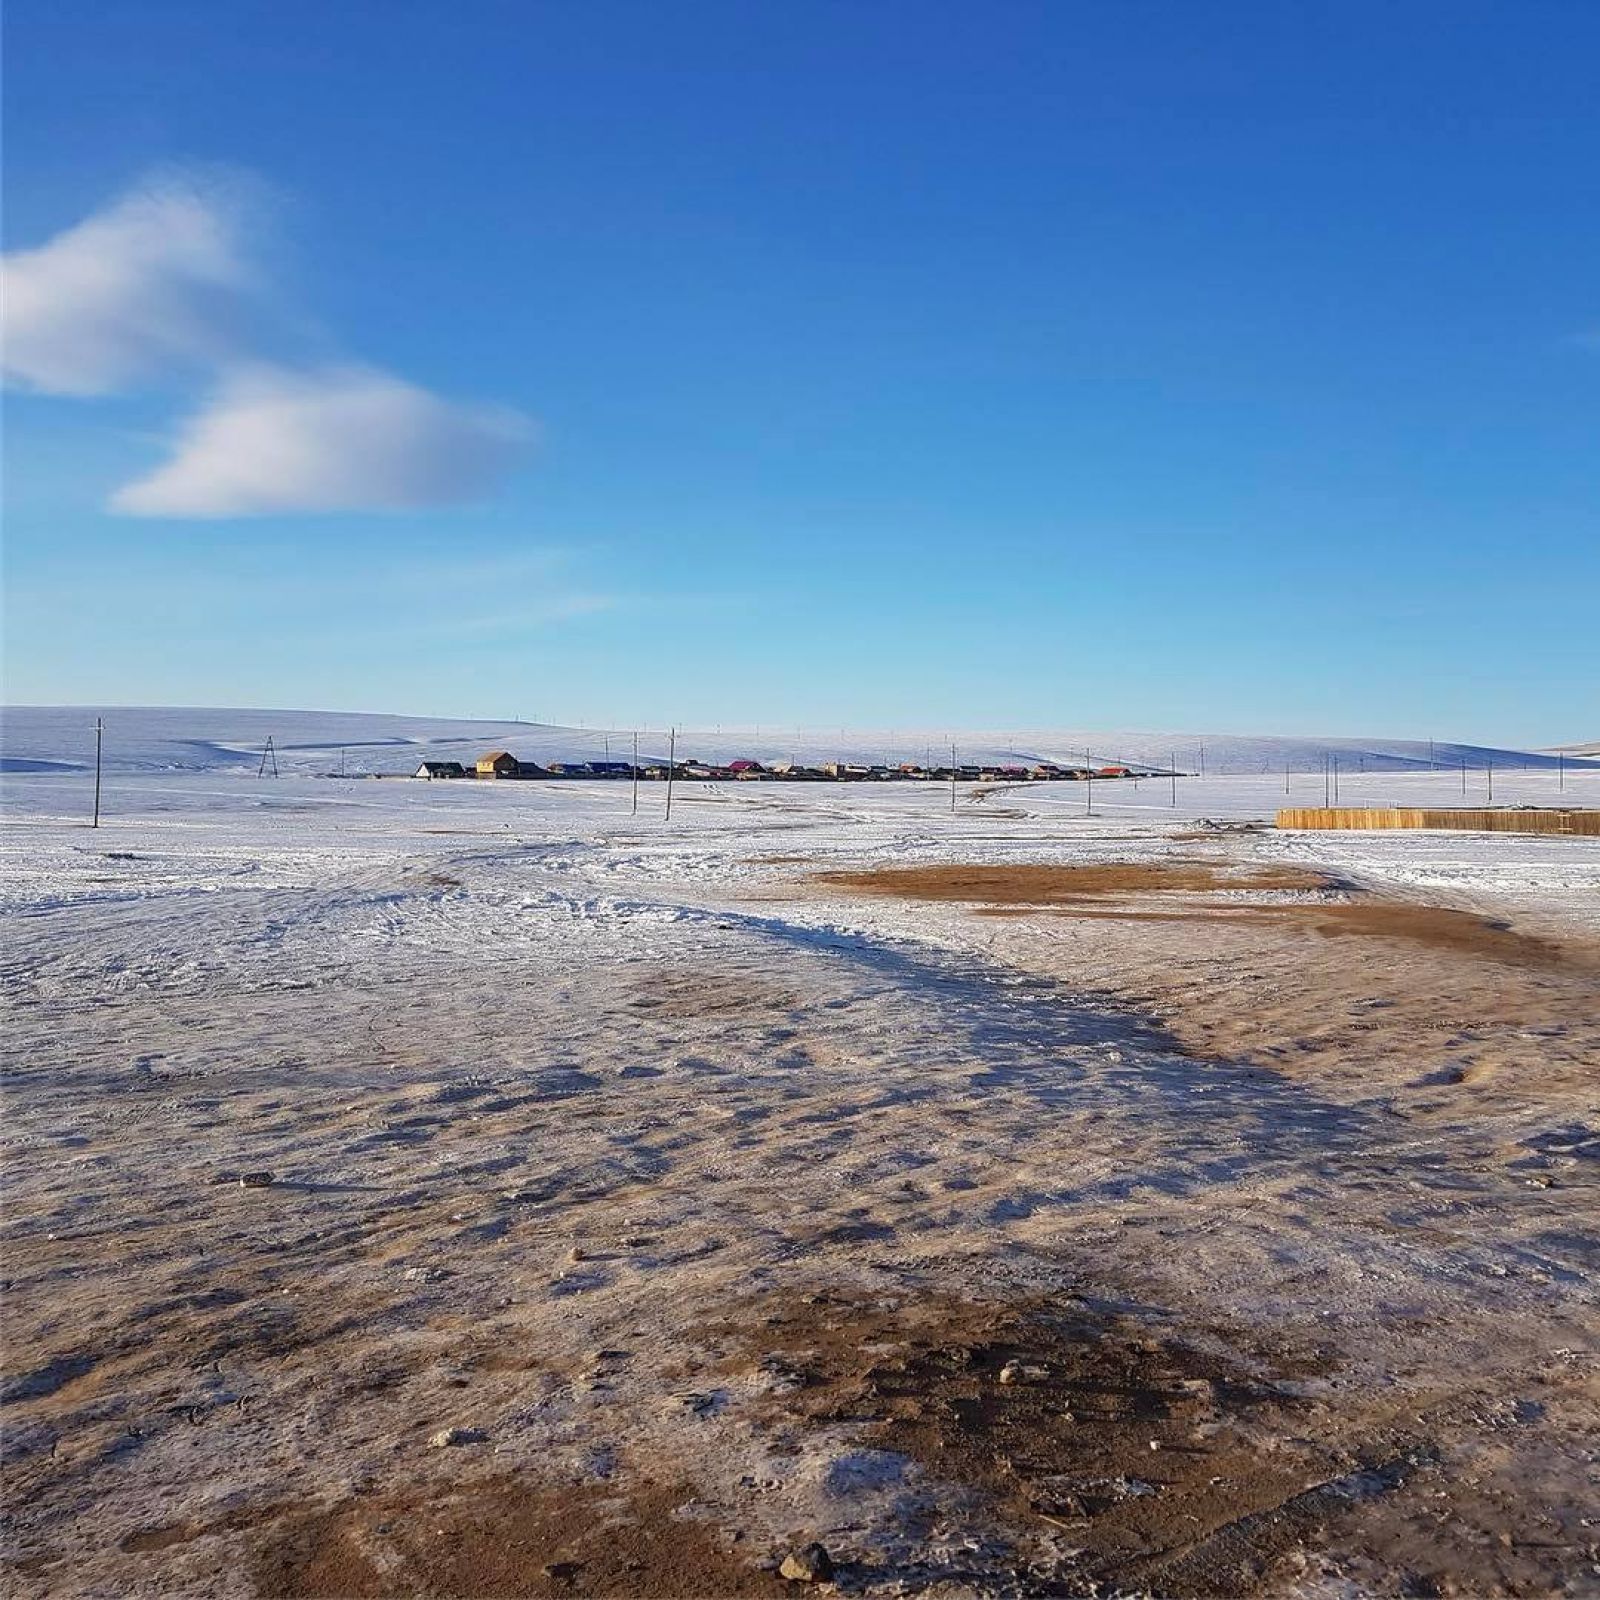 Gobi Winter Crossing - Escape To Mongolia